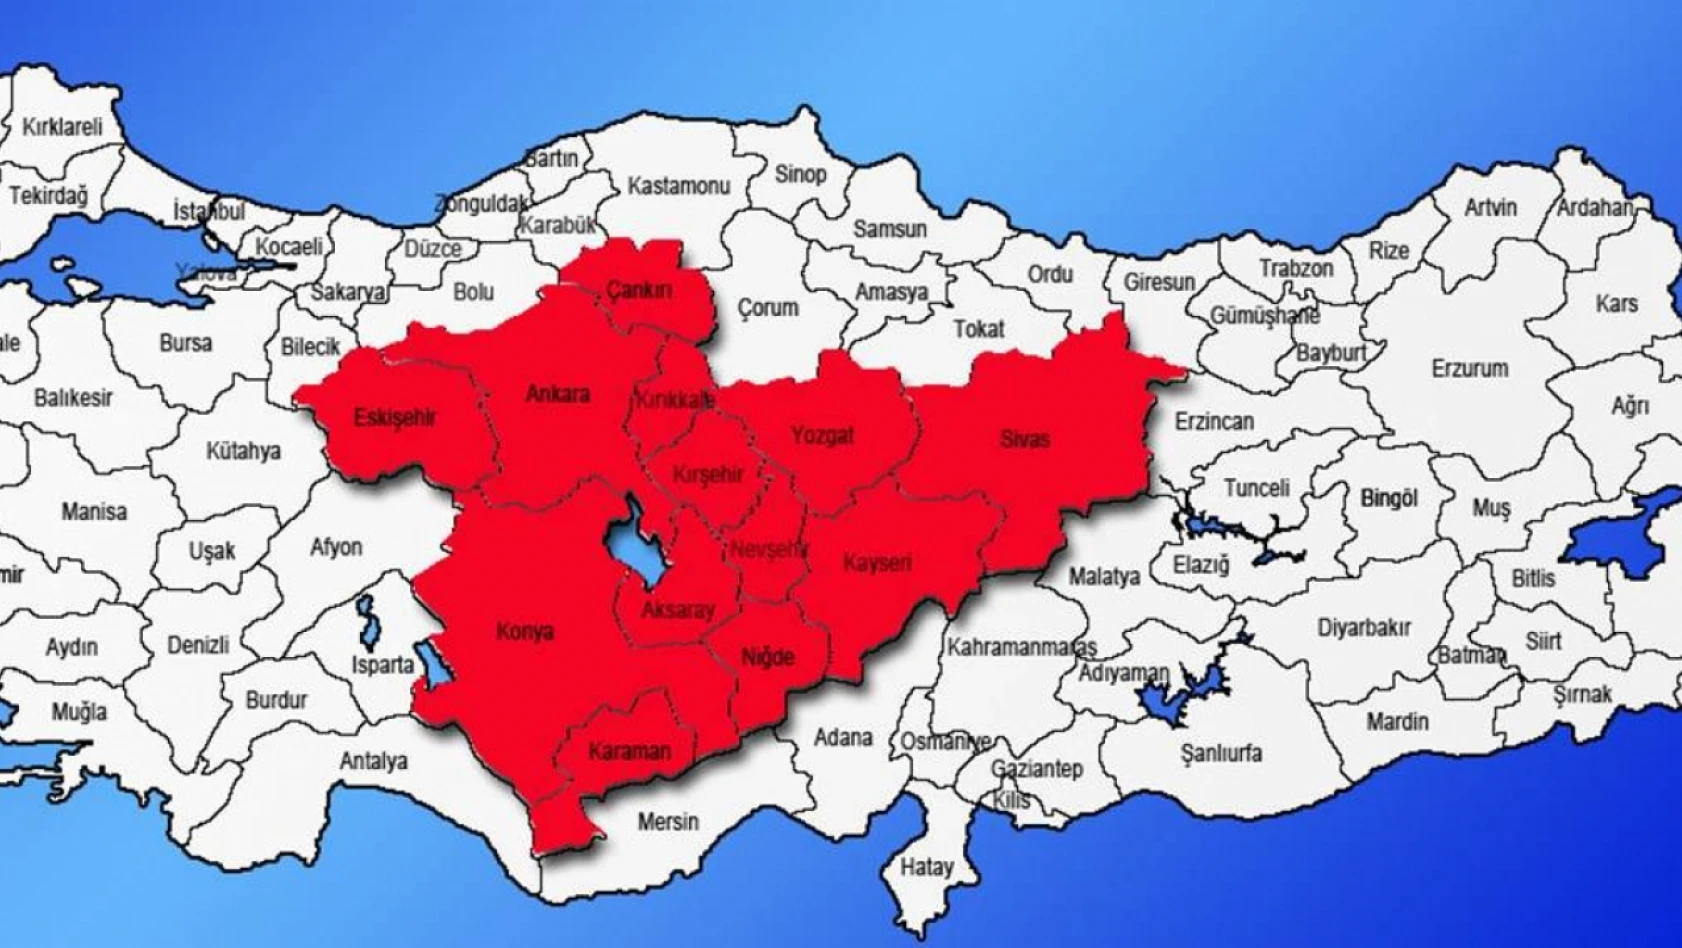 Kayseri, Aksaray, Nevşehir, Çankırı, Sivas, Karaman, Kırıkkale ve Konya'da yaşayanlar dikkat – Artık kesin tarih verildi!